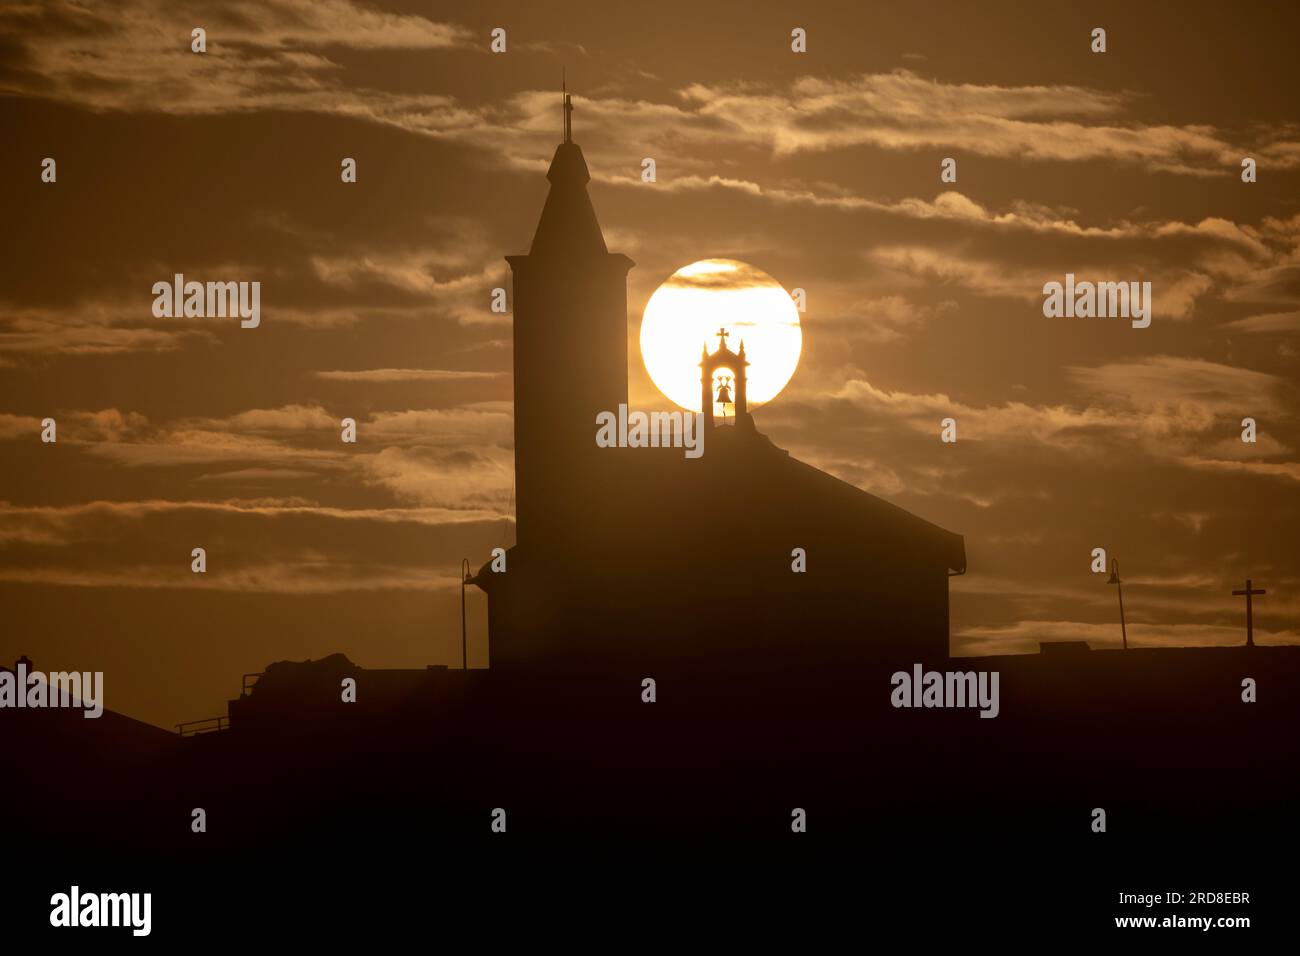 Soleil aligné avec la silhouette de l'église de Luarca, Asturies, Espagne, Europe Banque D'Images